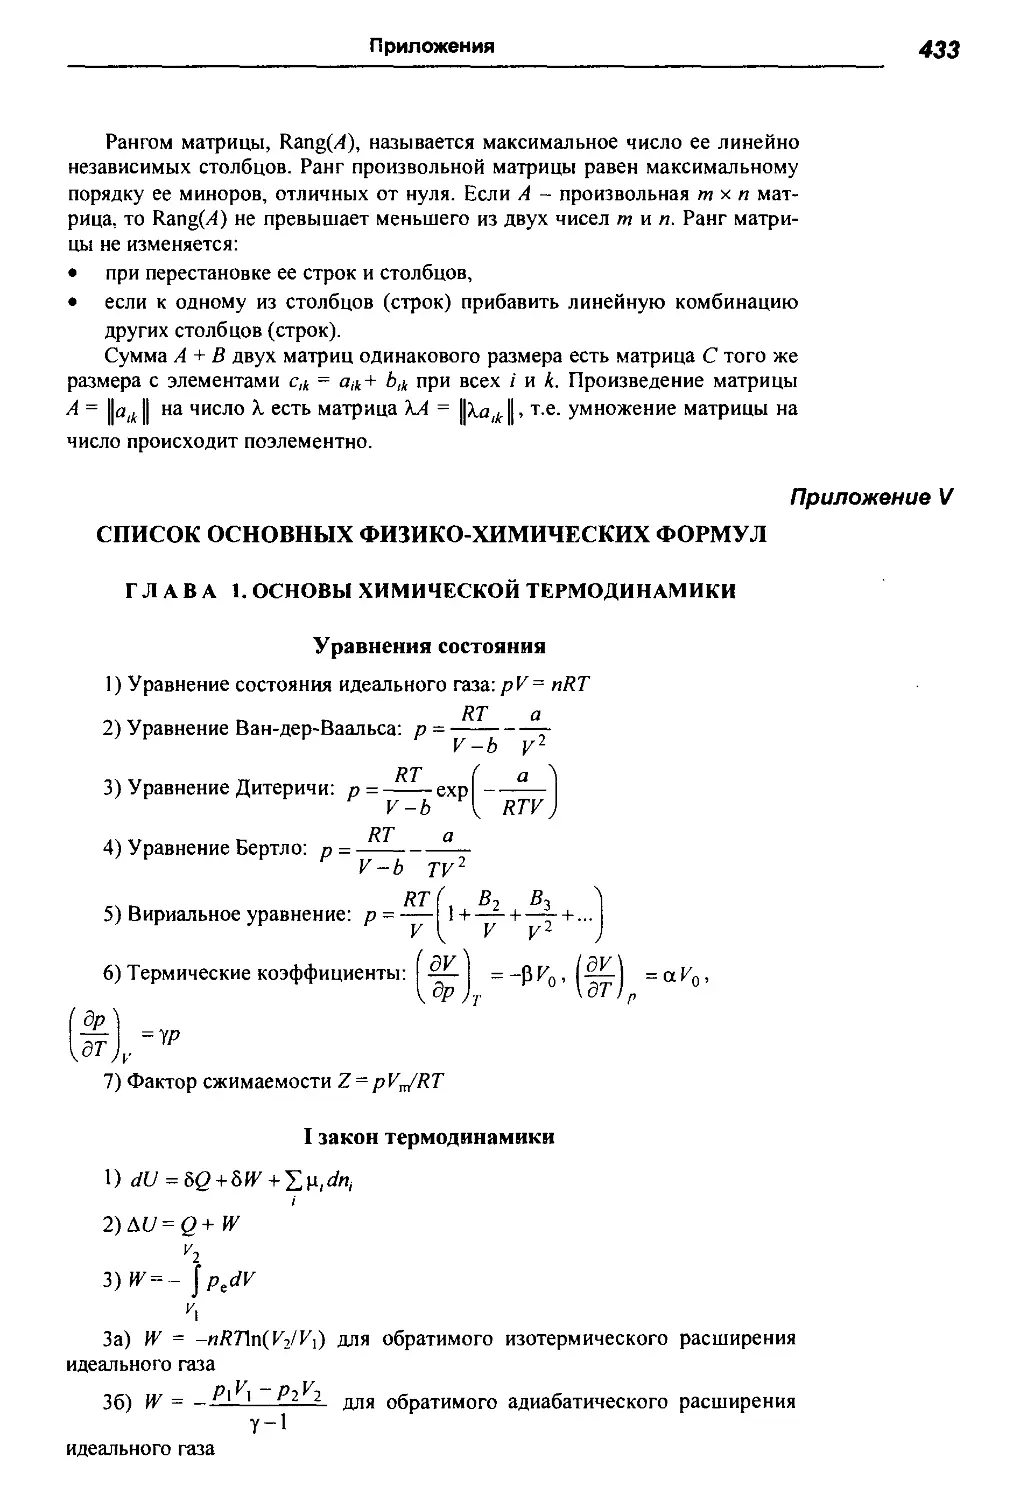 Приложение V. Список основных физико-химических формул